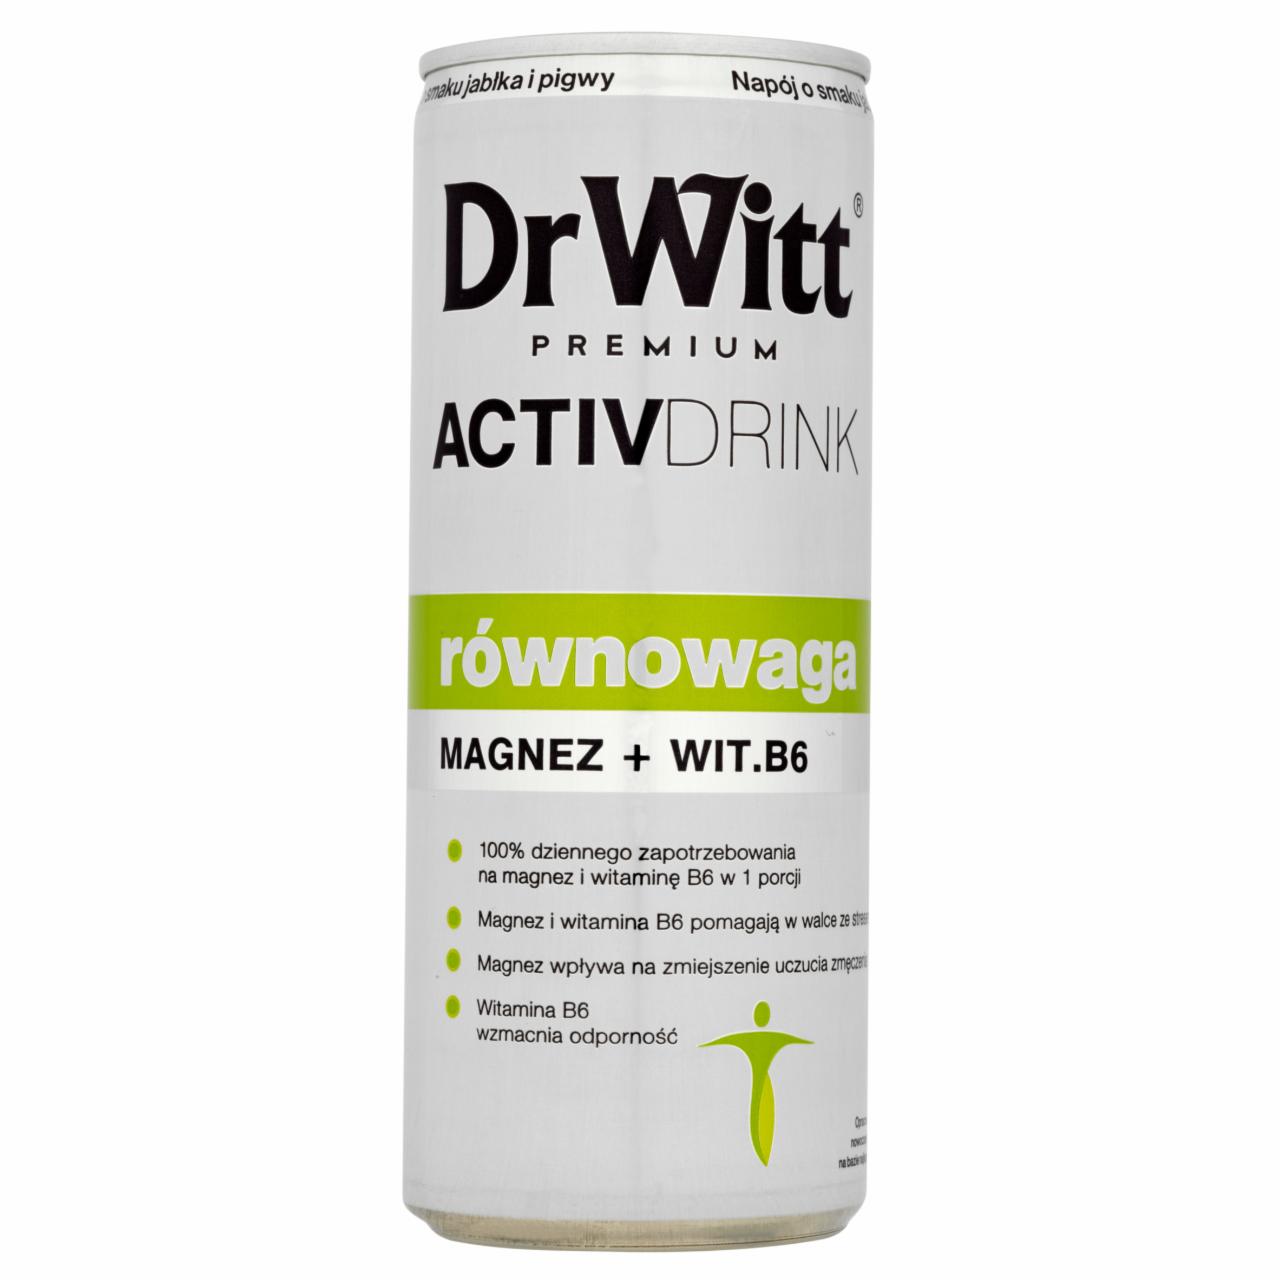 Zdjęcia - Dr Witt Premium Activdrink Równowaga Napój o smaku jabłka i pigwy 250 ml